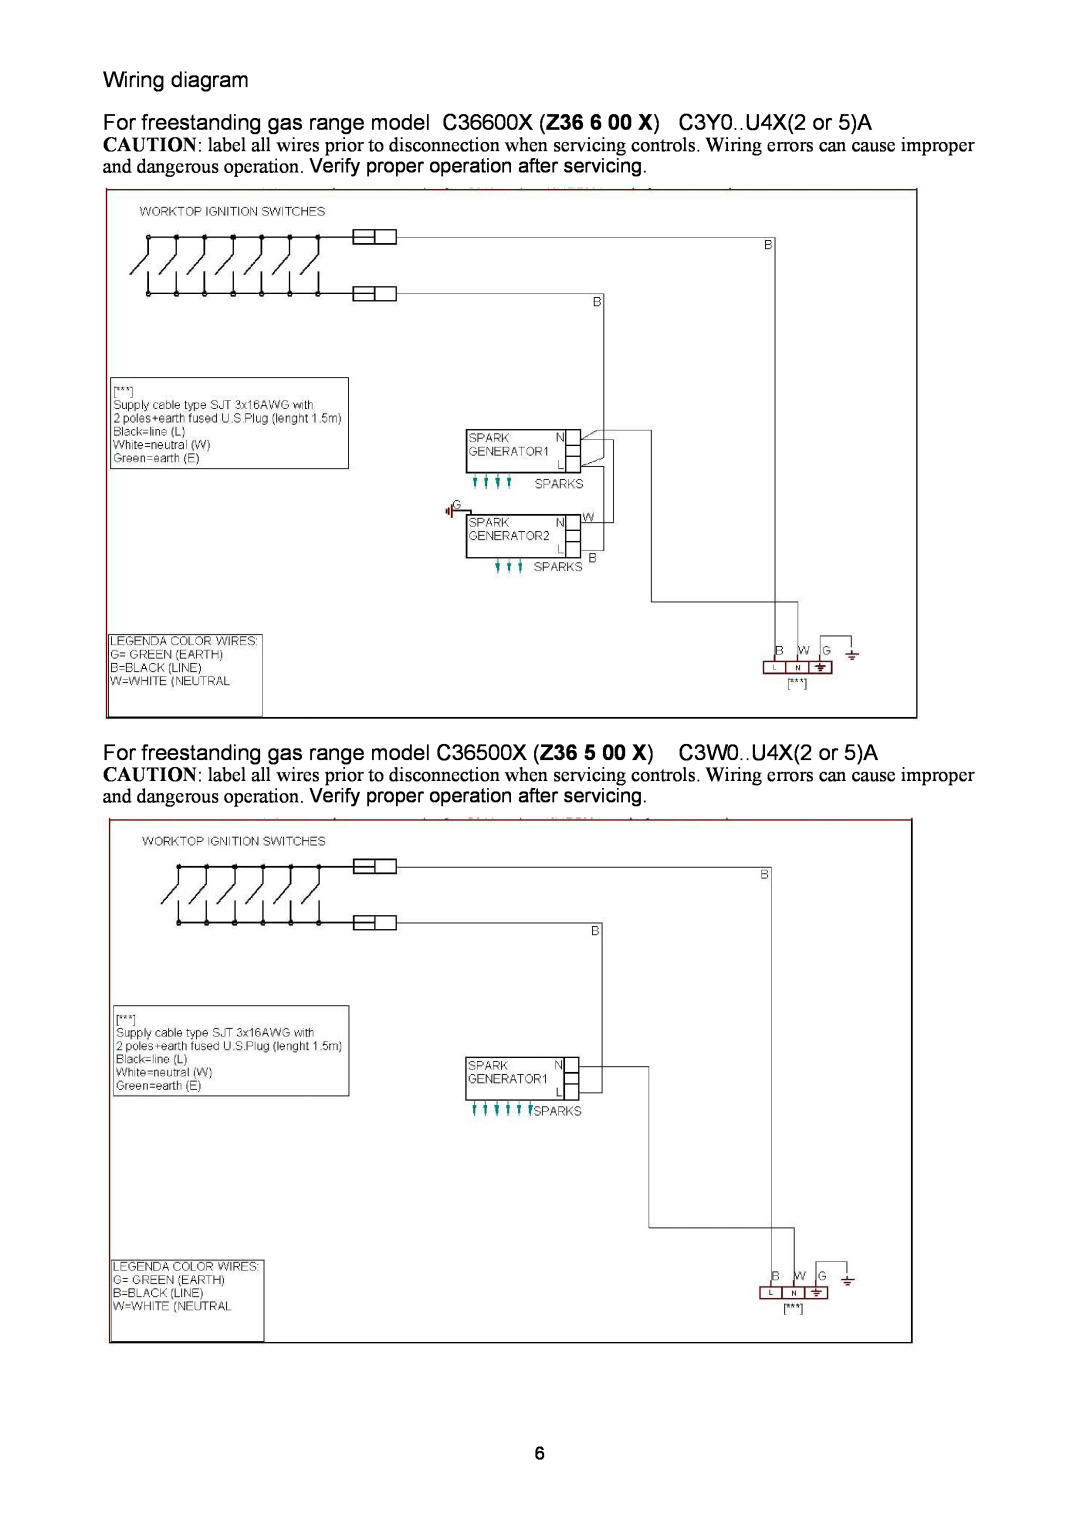 Bertazzoni Z36600X, C36500X, Z36500X Wiring diagram, For freestanding gas range model C36600X Z36 6 00 X C3Y0..U4X2 or 5A 